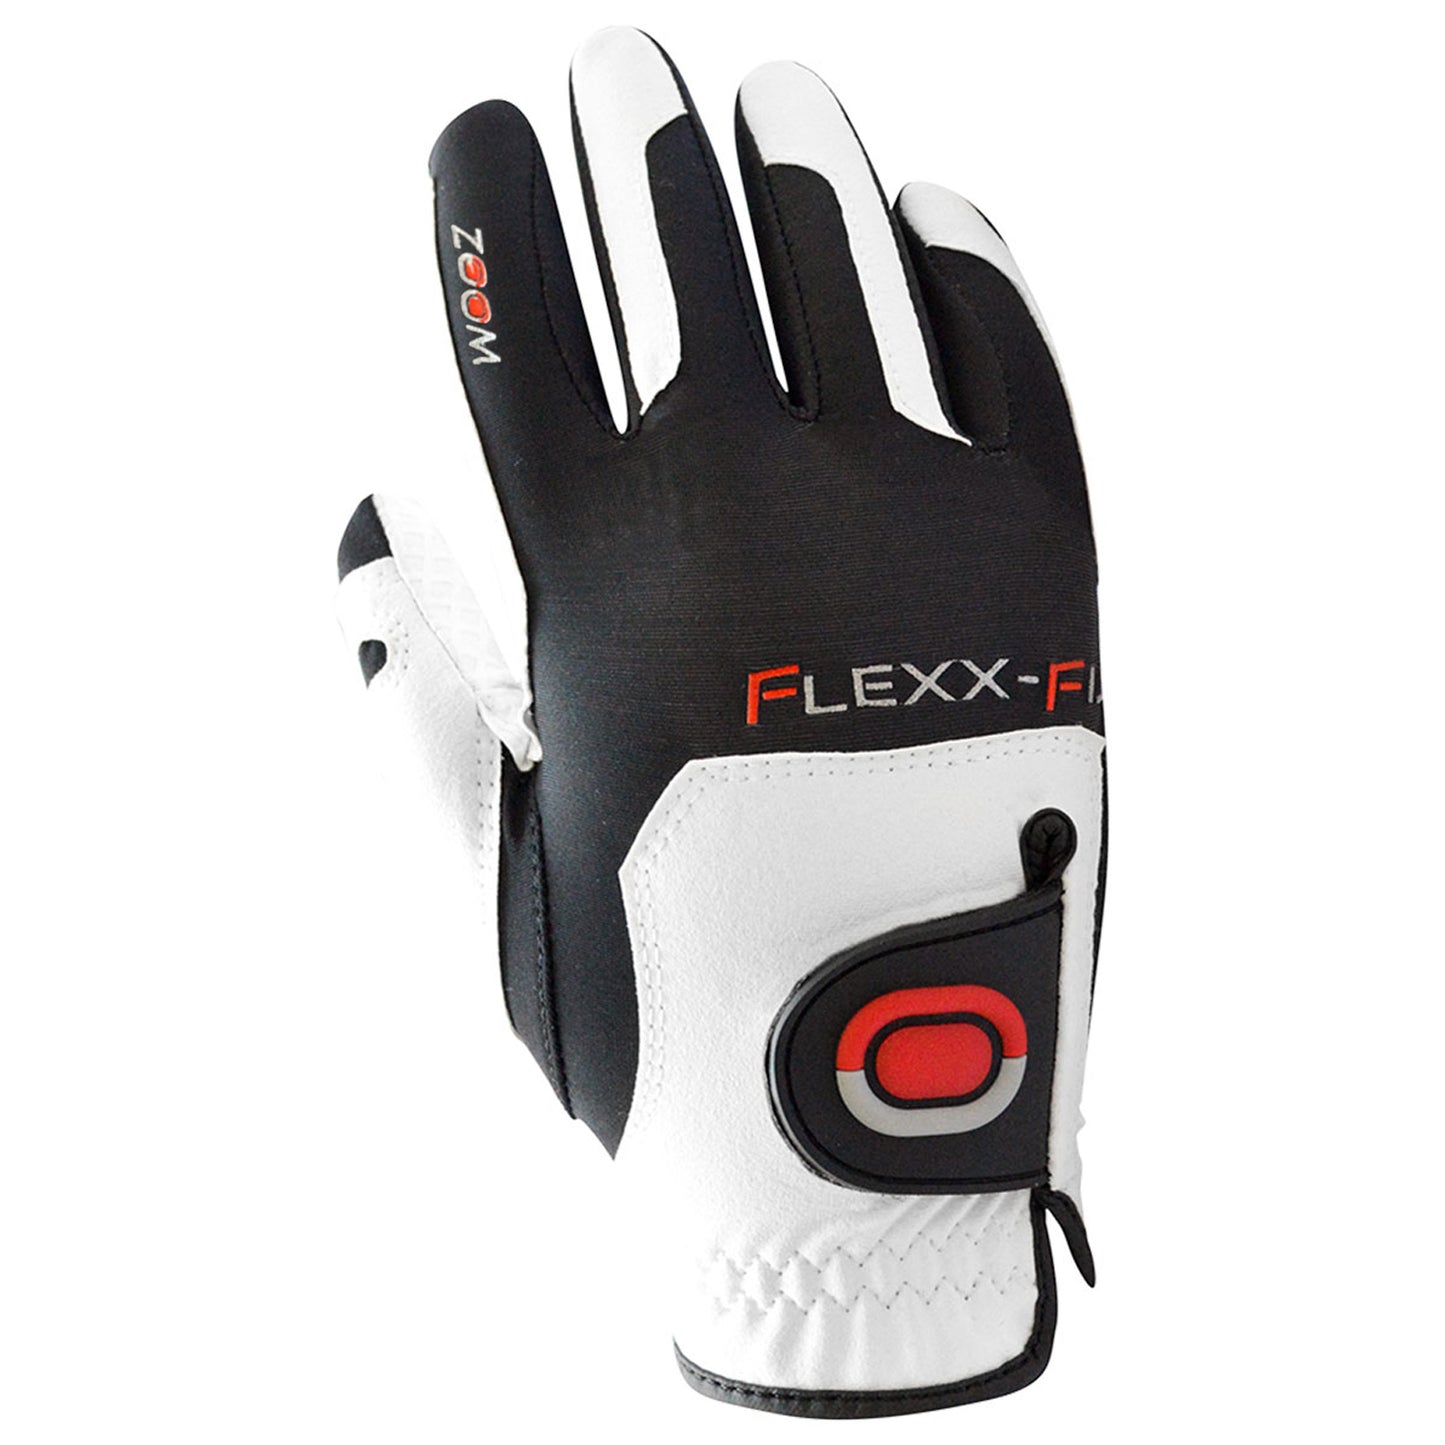 Zoom Ladies Flexx Fit Right Hand TOUR Golf Glove - One Size